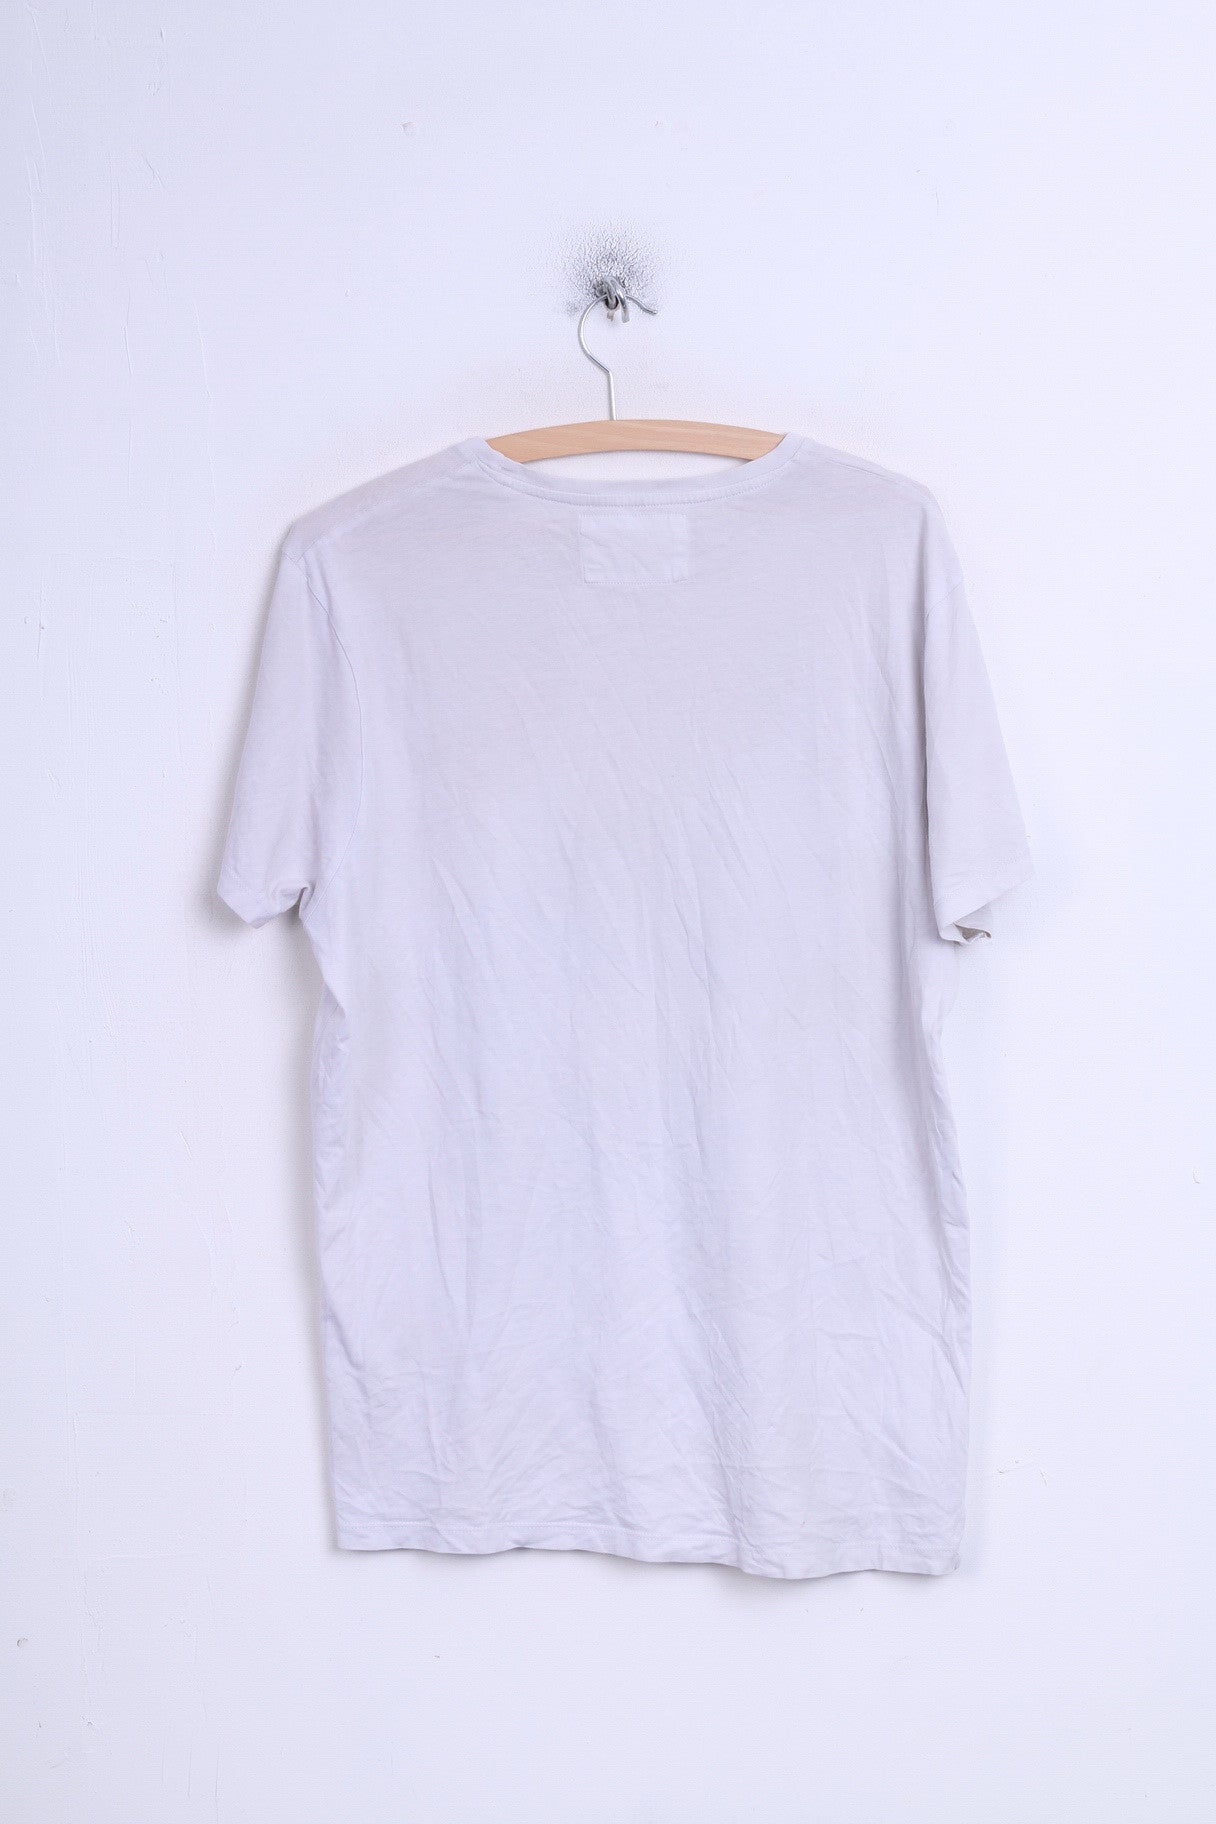 T-shirt Primark da donna XL bianca RIHANNA girocollo in cotone